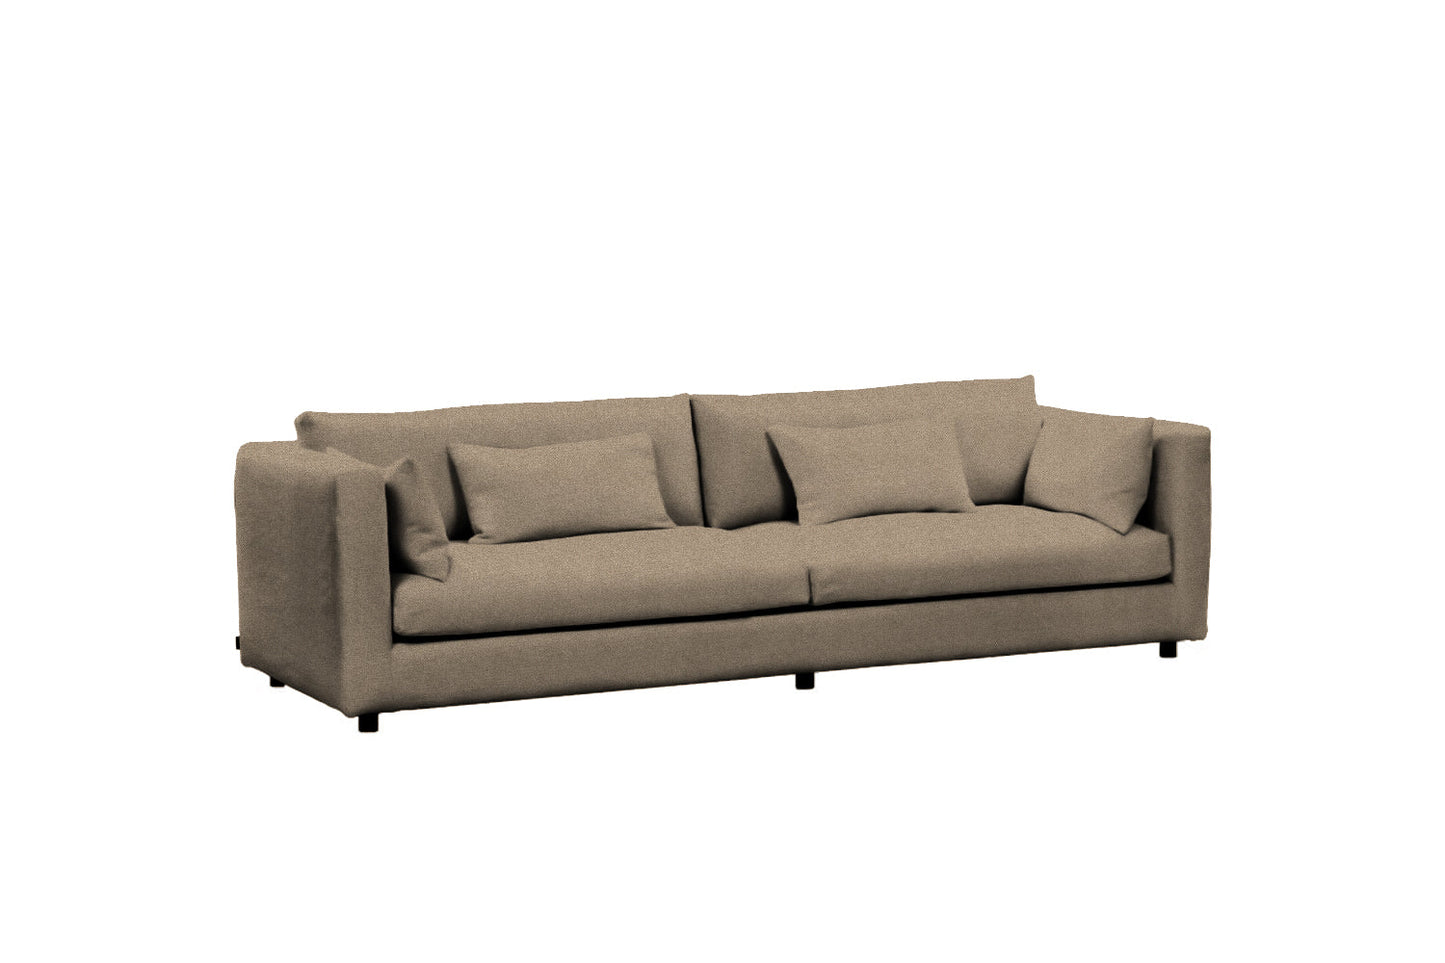 Low sohva 260 cm ht collection